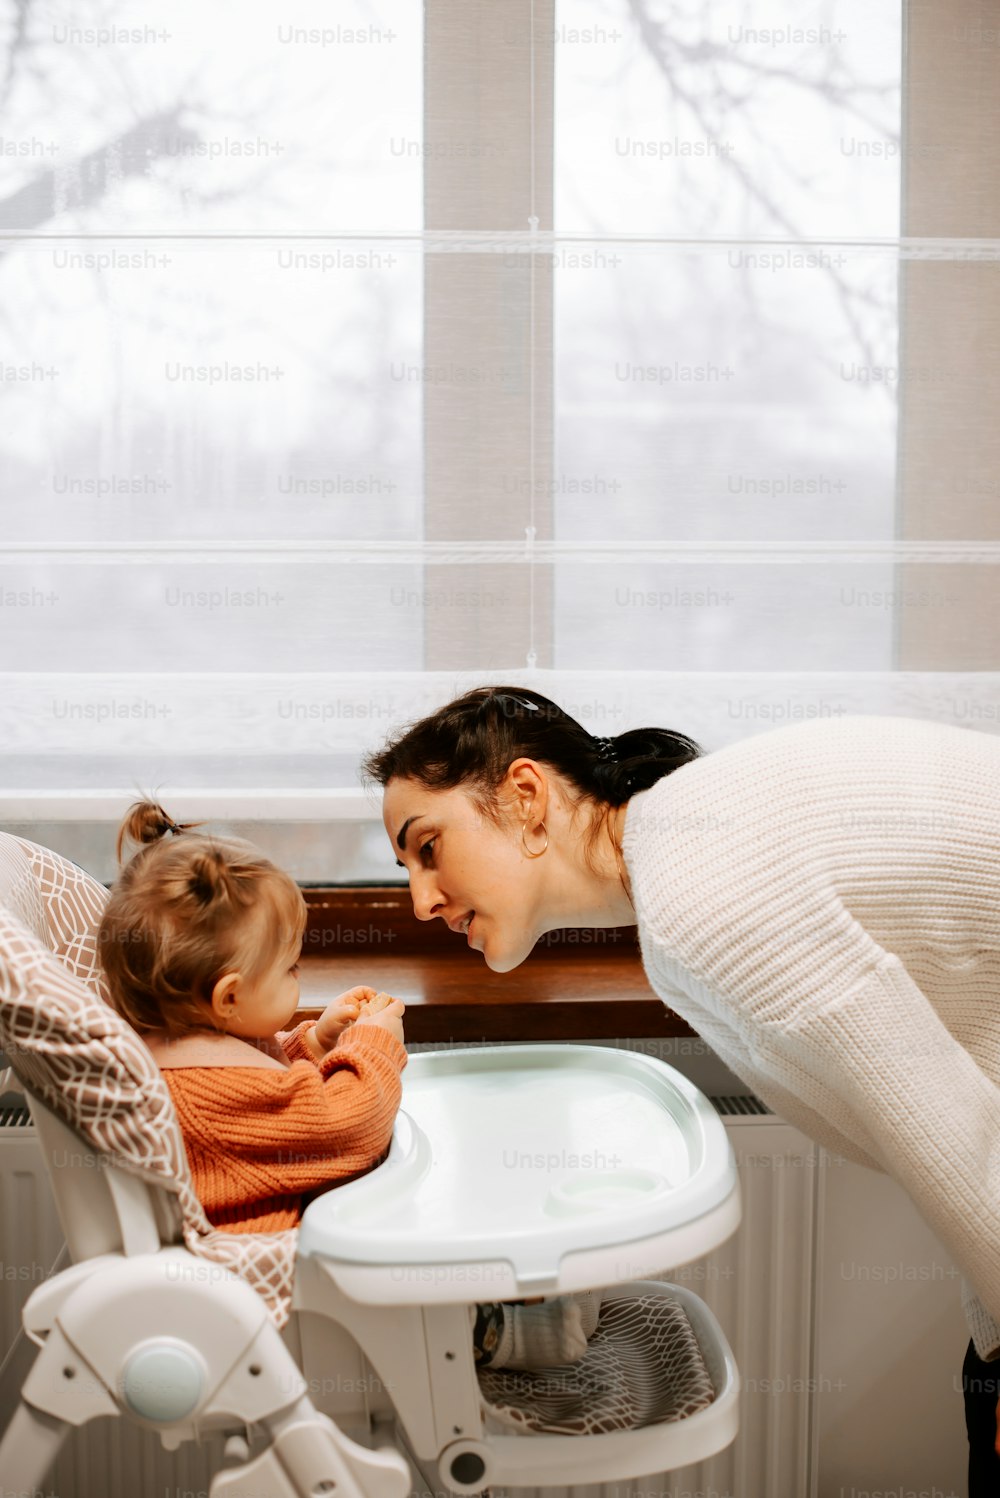 욕조에 있는 여자와 아이